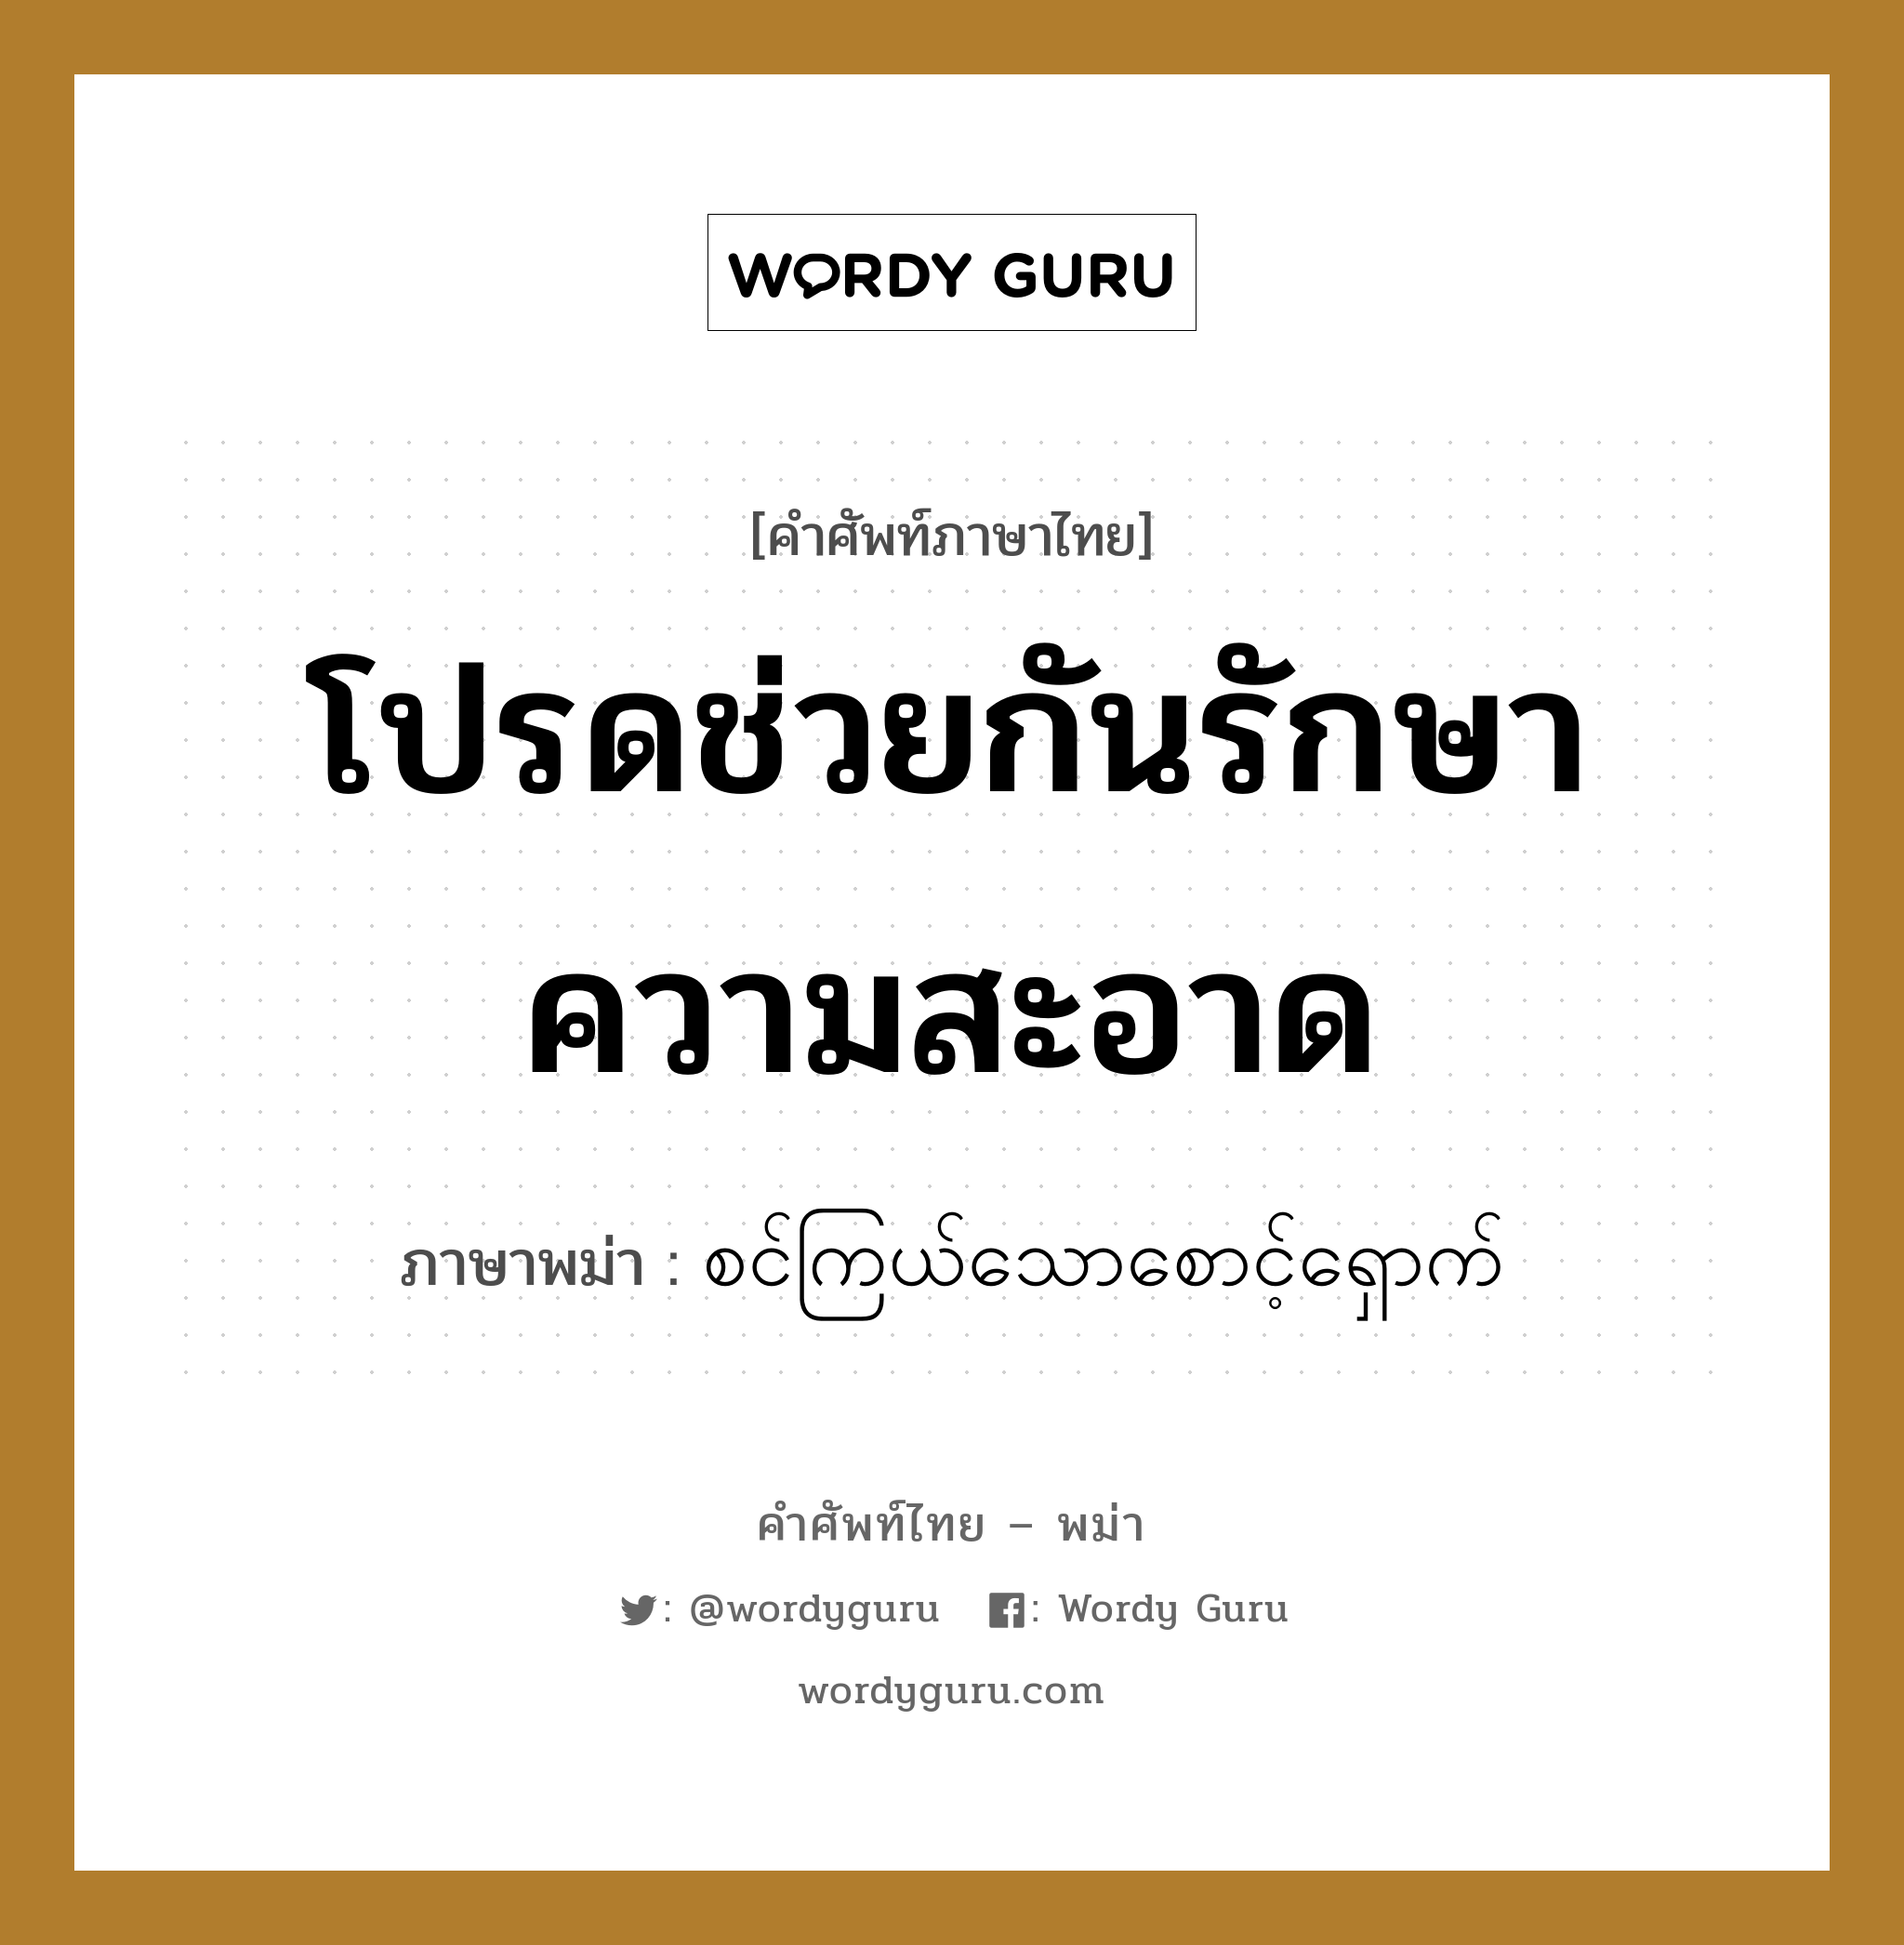 โปรดช่วยกันรักษาความสะอาด ภาษาพม่าคืออะไร, คำศัพท์ภาษาไทย - พม่า โปรดช่วยกันรักษาความสะอาด ภาษาพม่า စင်ကြယ်သောစောင့်ရှောက် หมวด ทั่วไป หมวด ทั่วไป